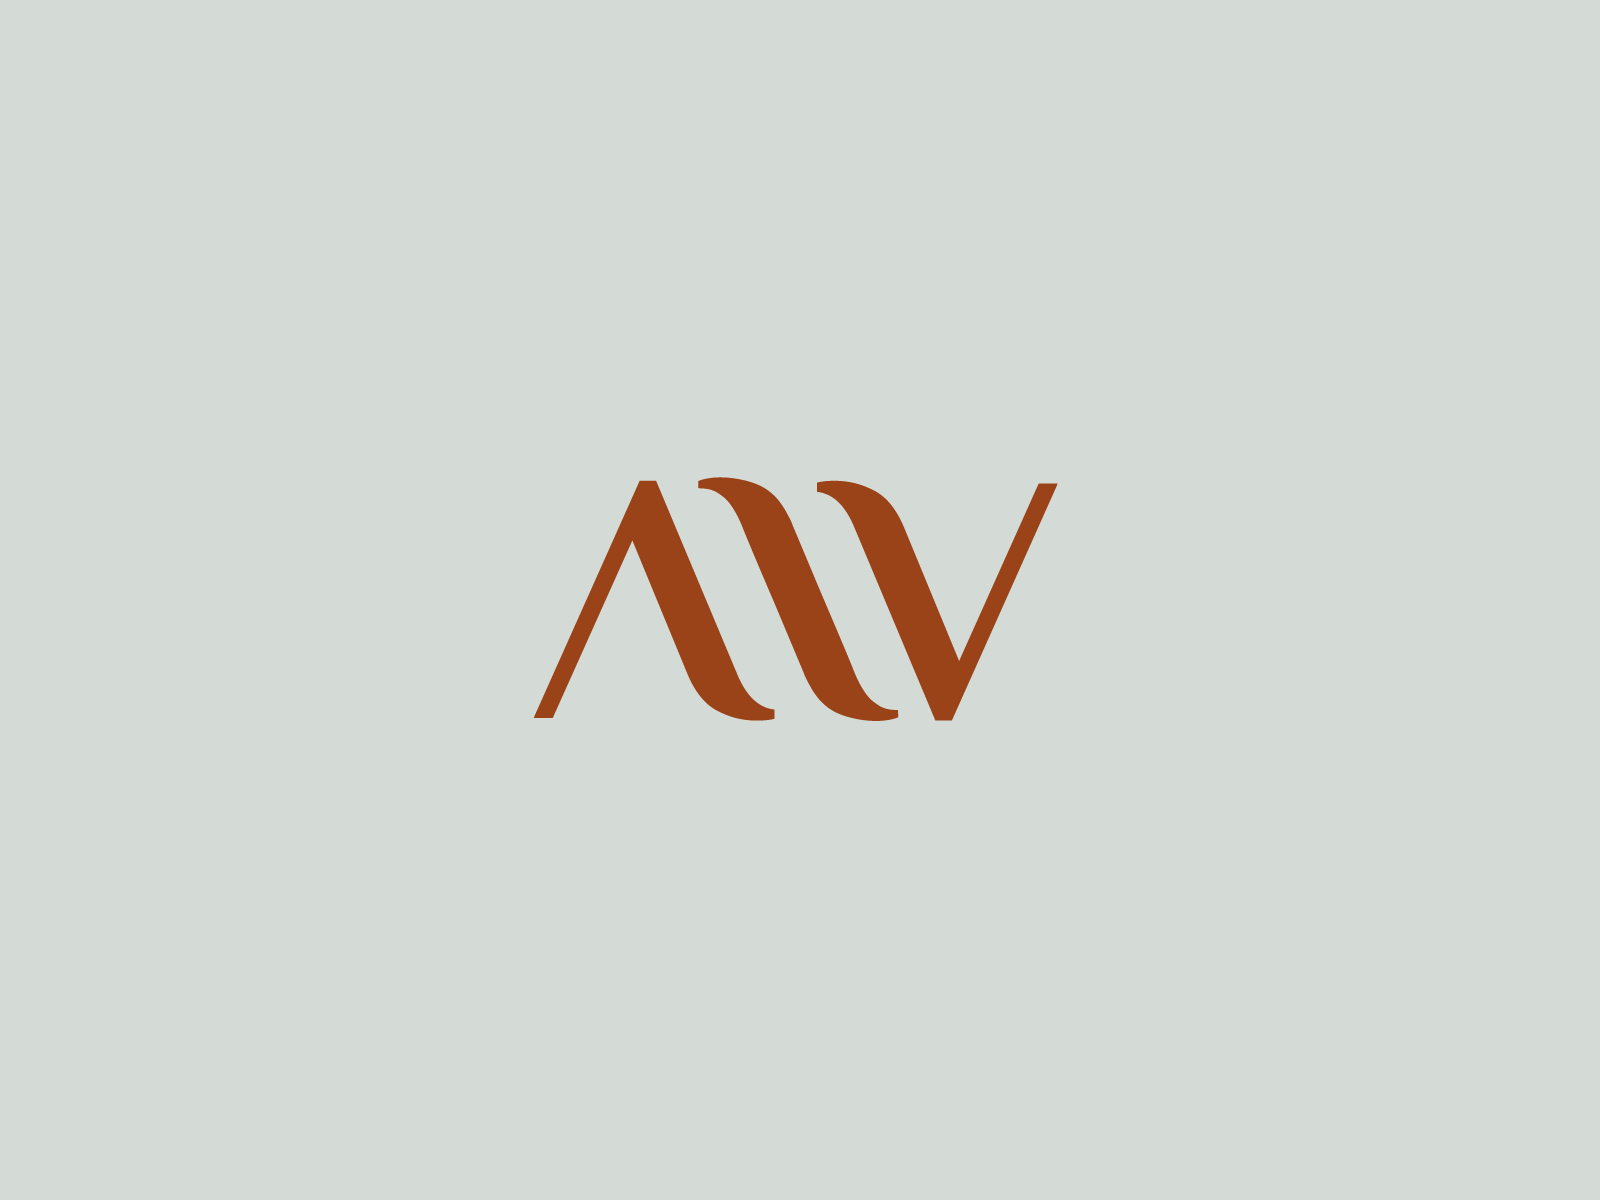 AW logo mark